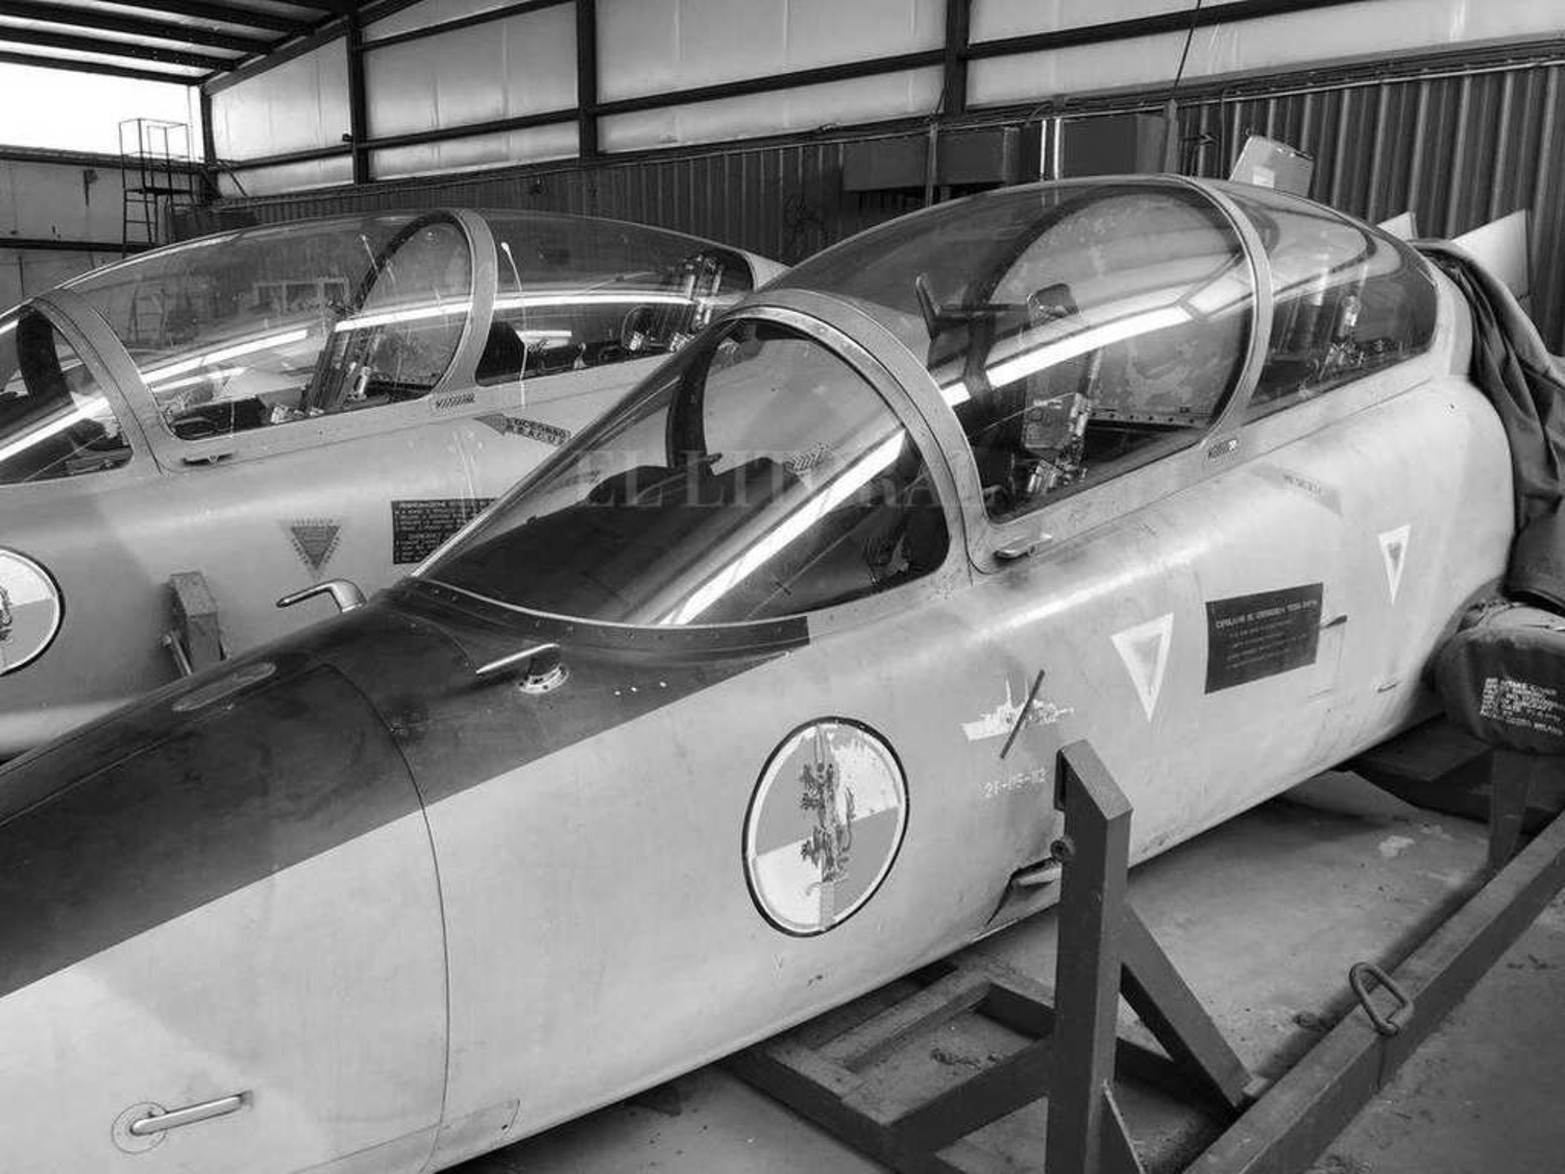 El sunchalense Owen Guillermo Crippa manipuló el Jet Caza Aermacchi MB 339 protagonizó una de las misiones más espectaculares durante la guerra de Malvinas está a punto de ser recuperado y repatriado desde EE. UU para su restauración y exhibición en el Museo de la Aviación Naval de Bahía Blanca.